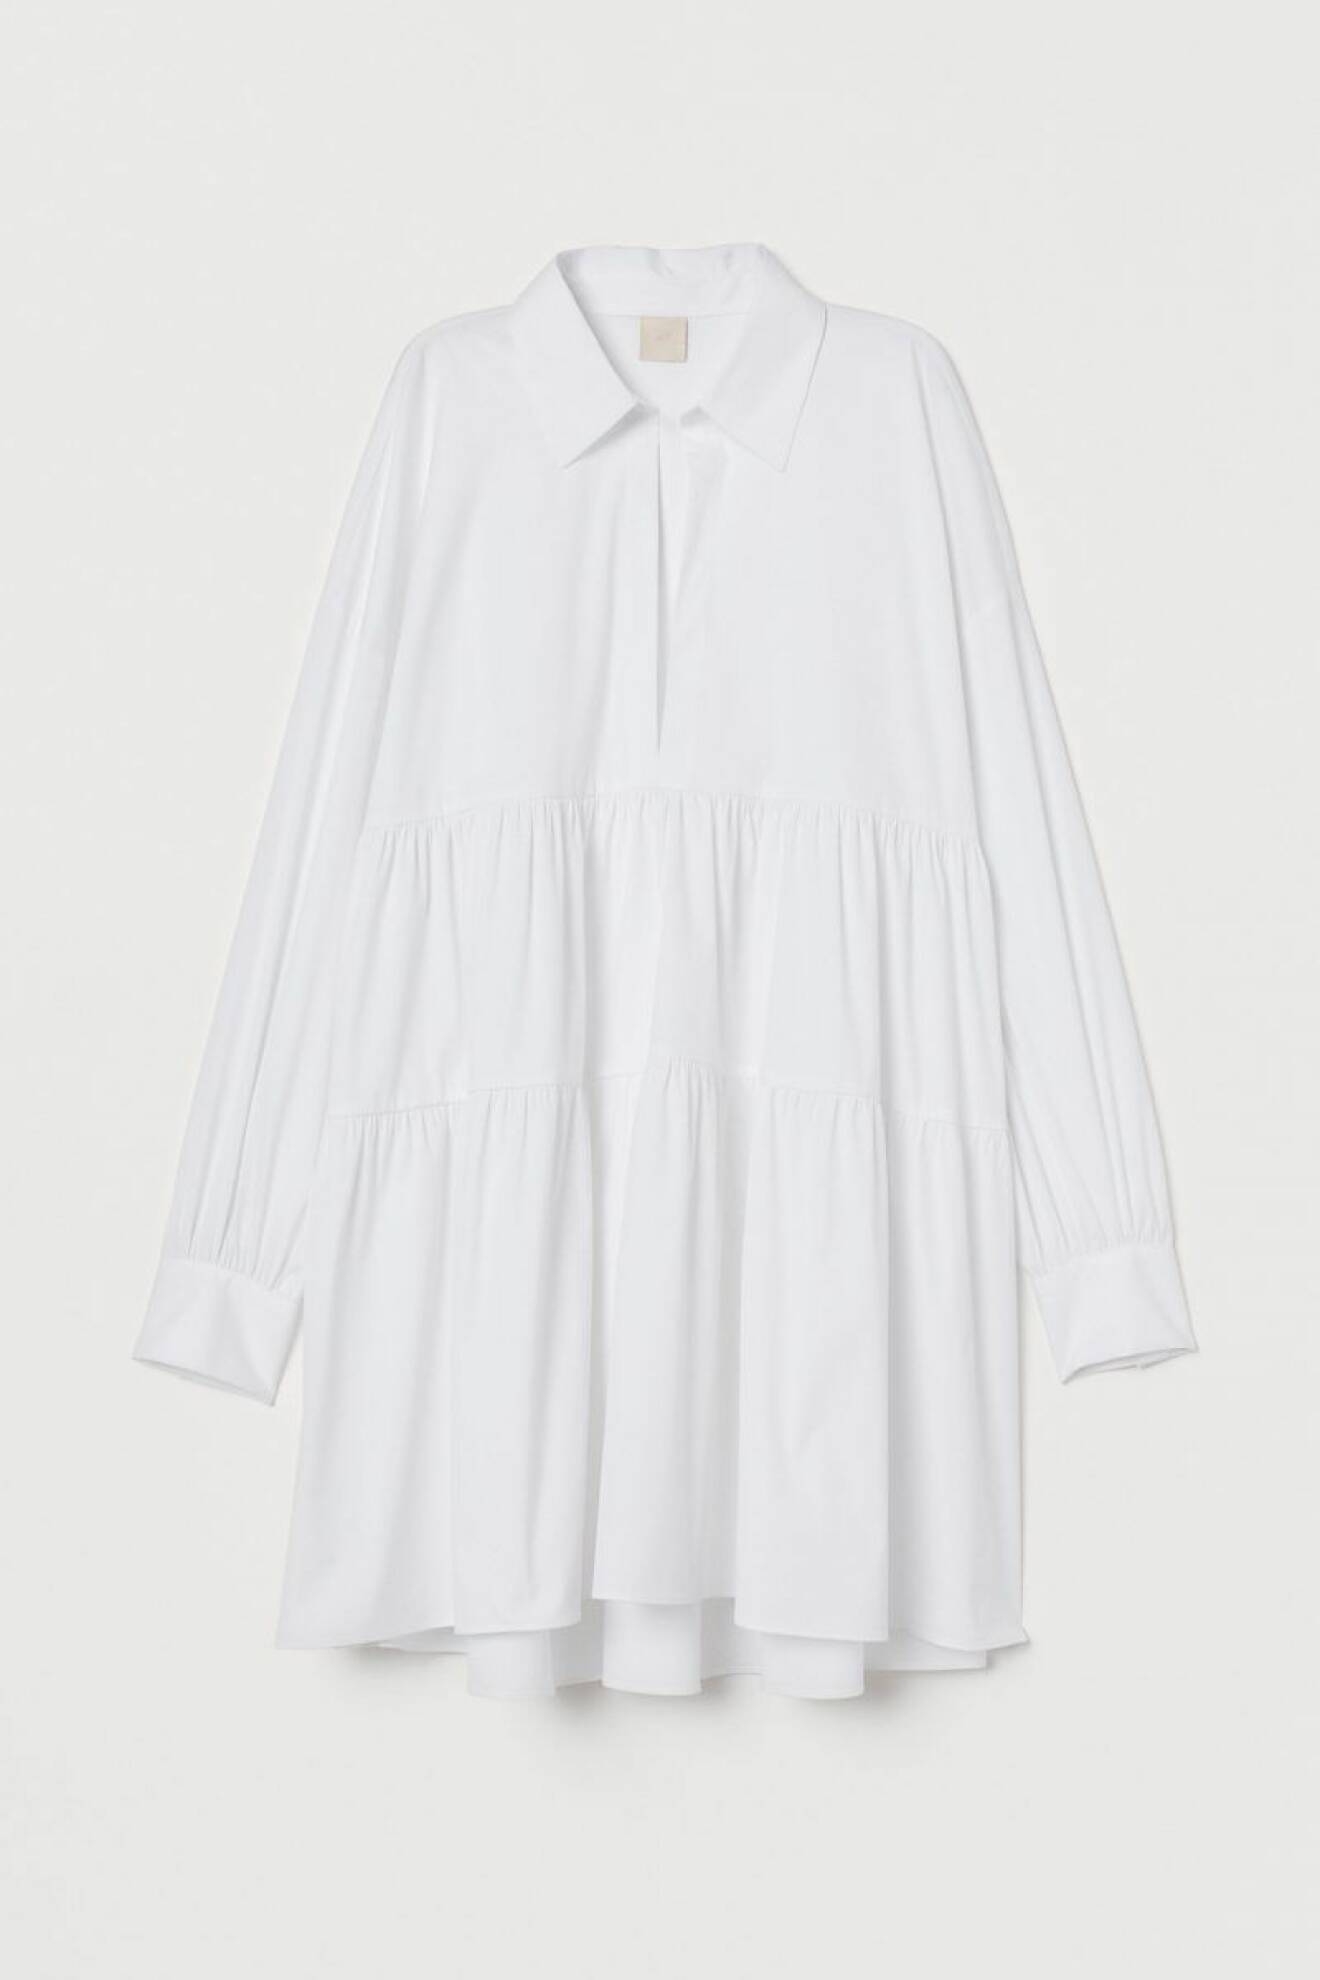 Vit miniklänning med krage, djup v-ringning och volang för att skapa volym, från H&M. Shoppa klänningen här!